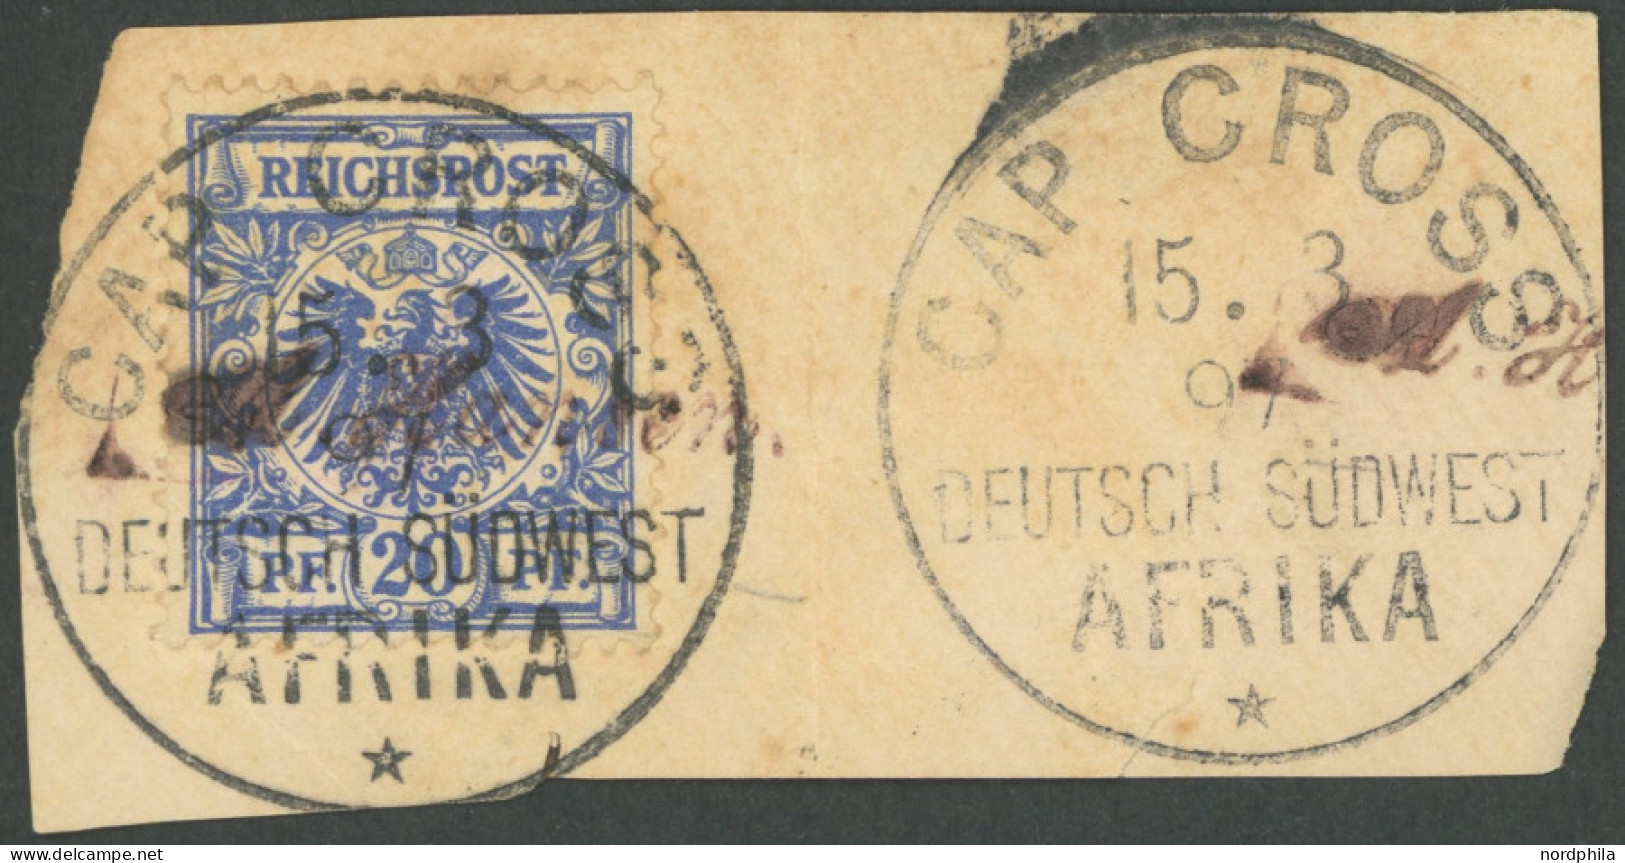 DSWA VS 48d BrfStk, 1897, 20 Pf. Violettultramarin Mit Stempel CAP CROSS Auf Briefstück, Fleckig, Fein - Duits-Zuidwest-Afrika